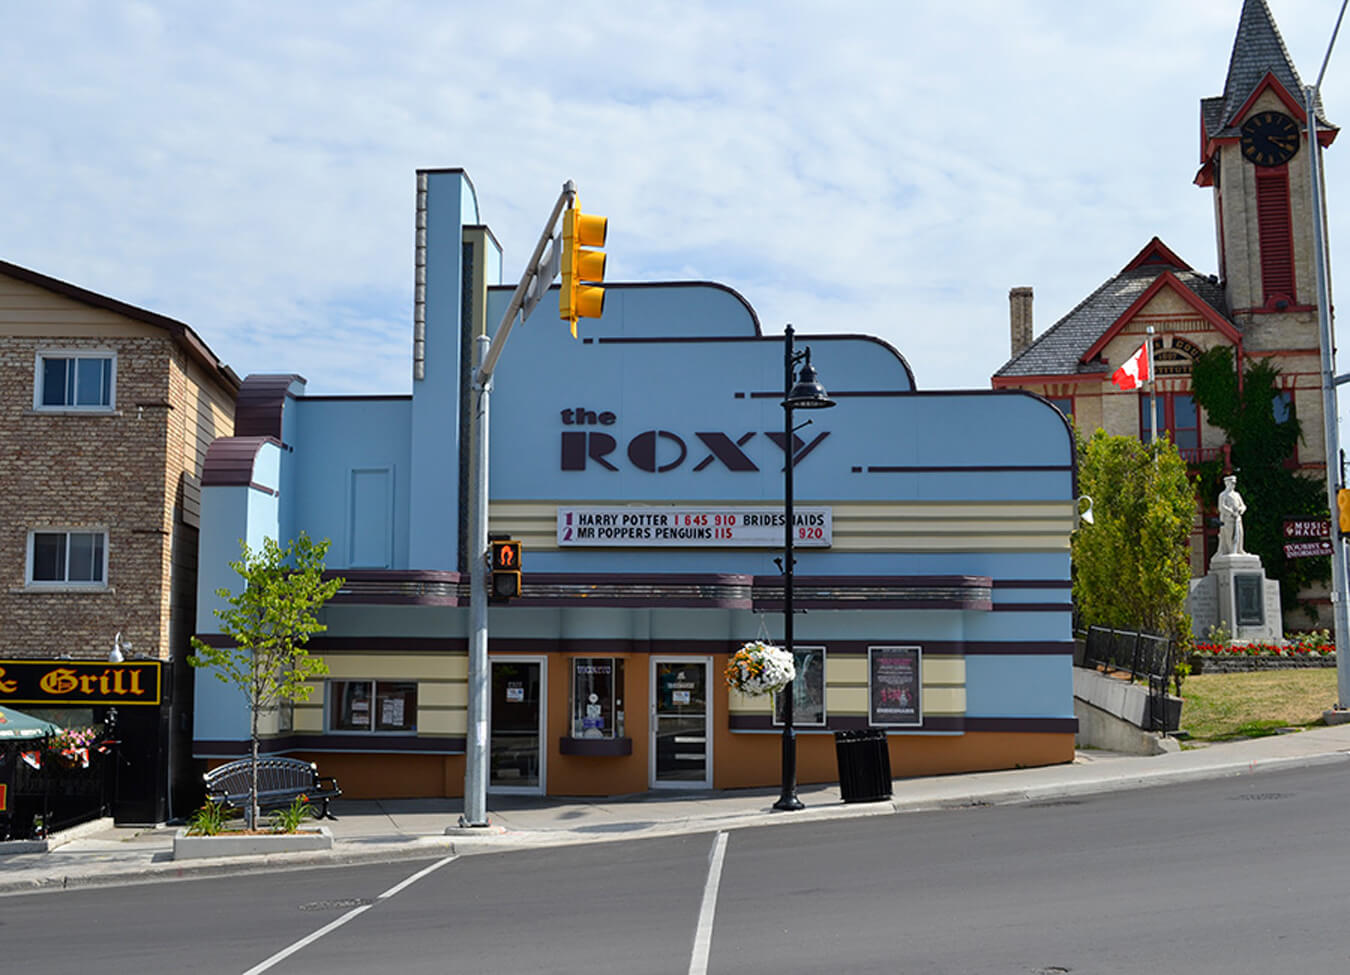 Roxy Theatres